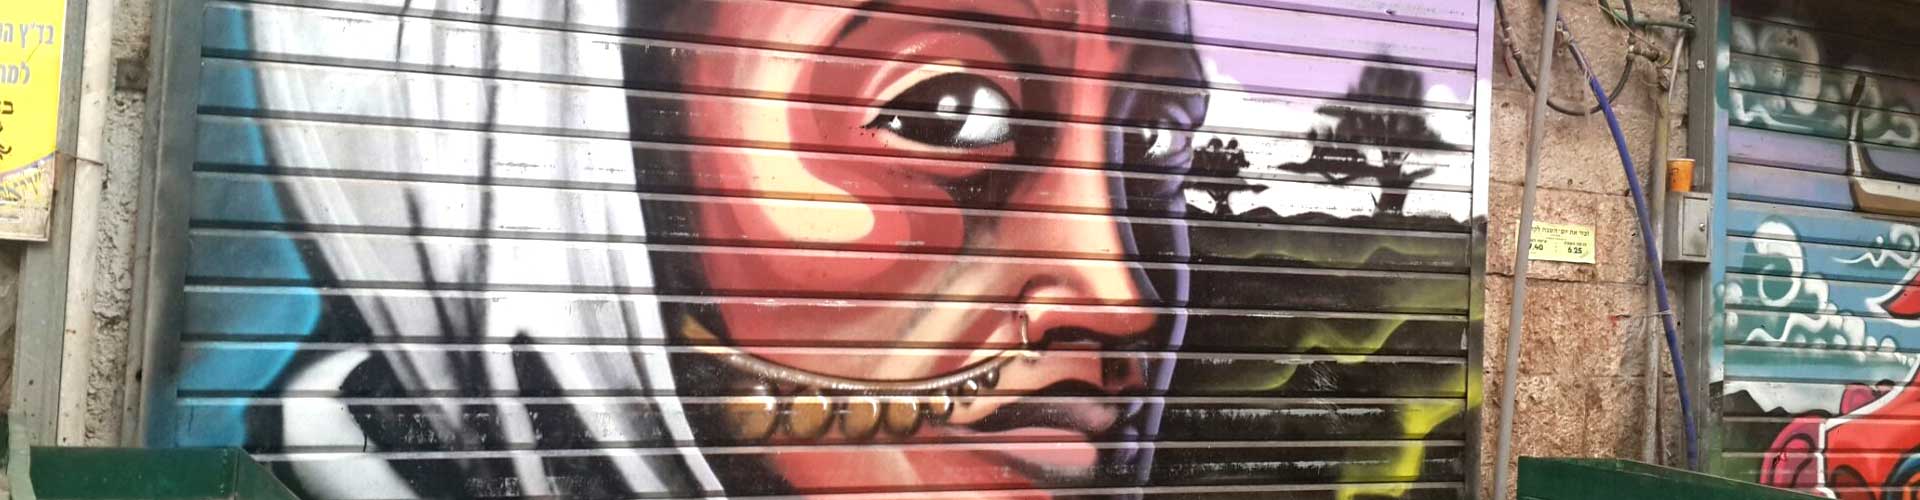 סיור גרפיטי ואמנות רחוב בירושלים